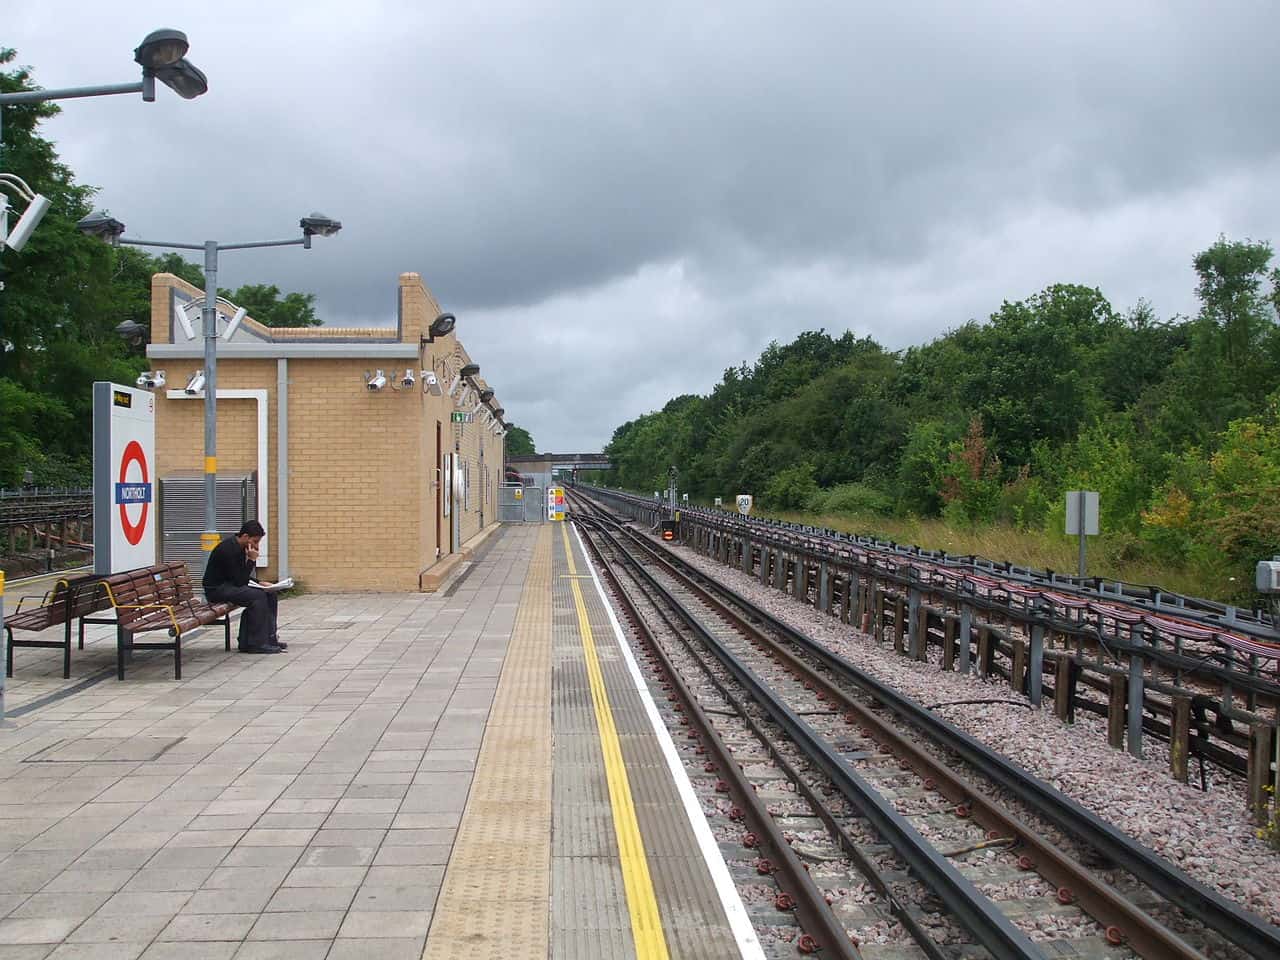 Northolt station